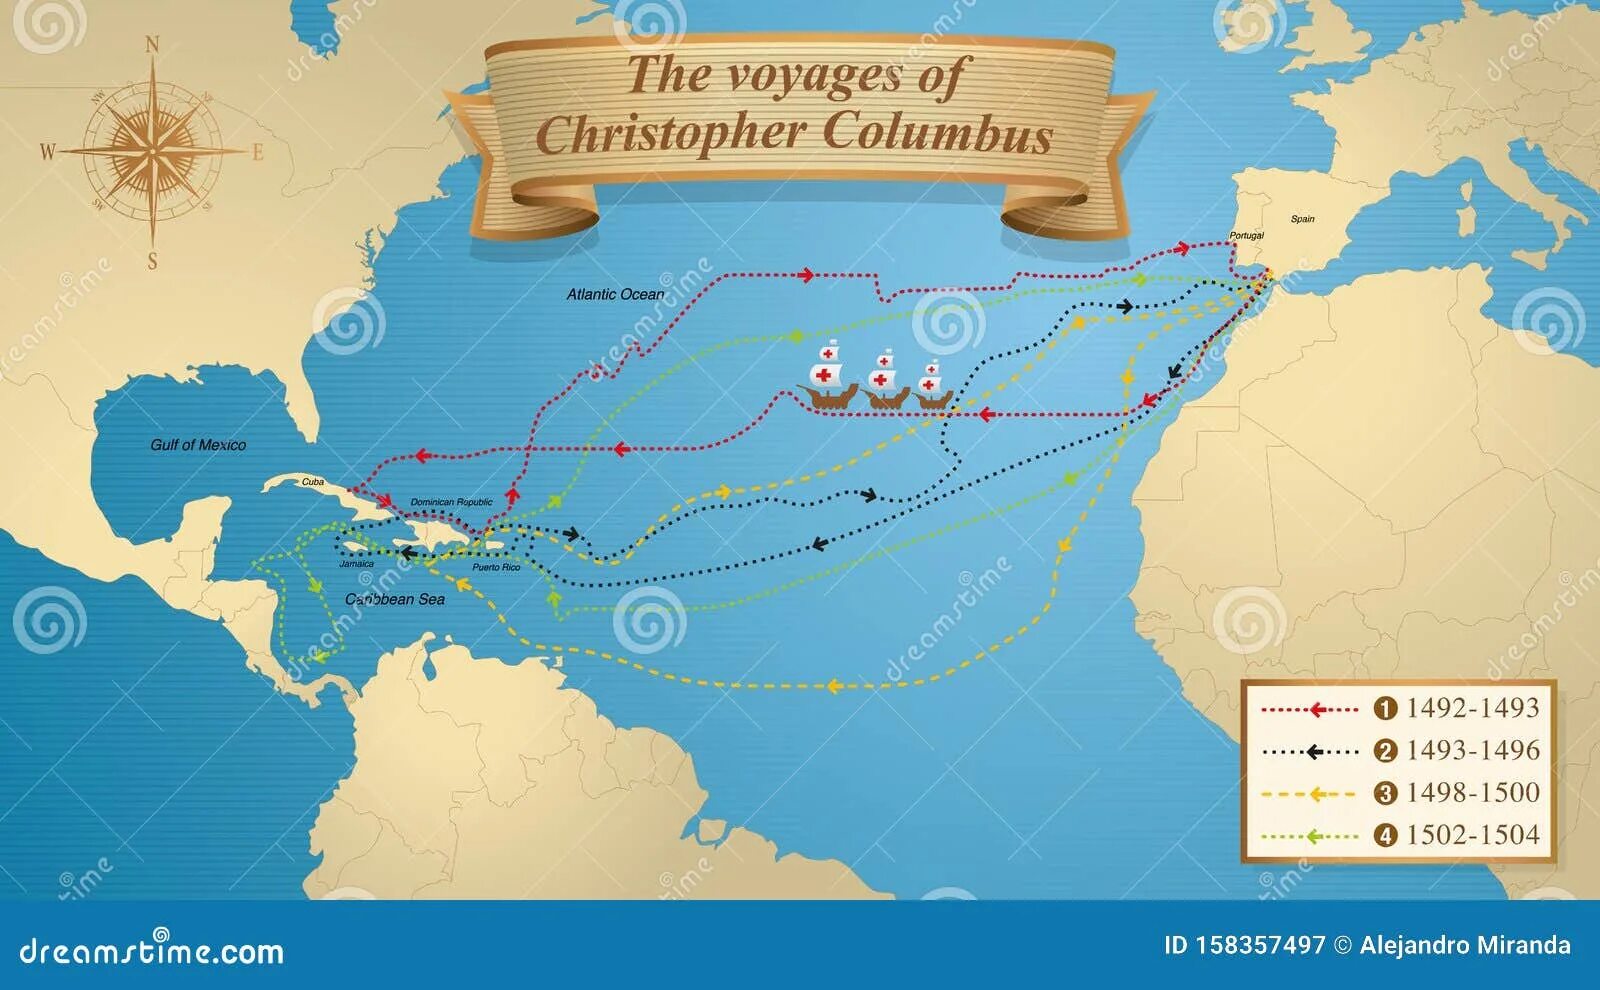 Путешествие Христофора Колумба 1492. Маршрут путешествия Христофора Колумба. Маршрут путешествия Христофора Колумба 1492-1493. Путешествие колумба на карте